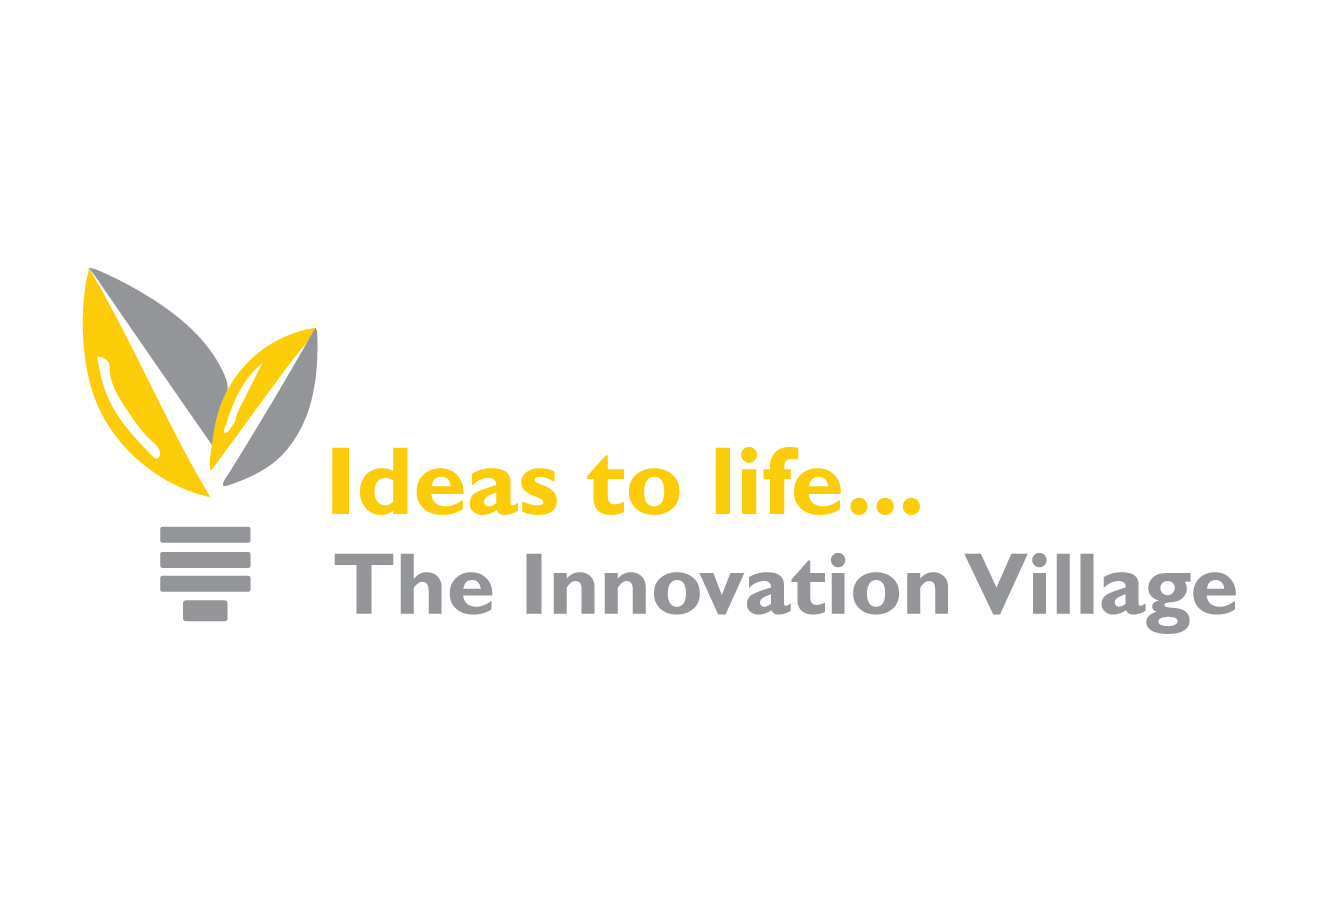 The Innovation Village